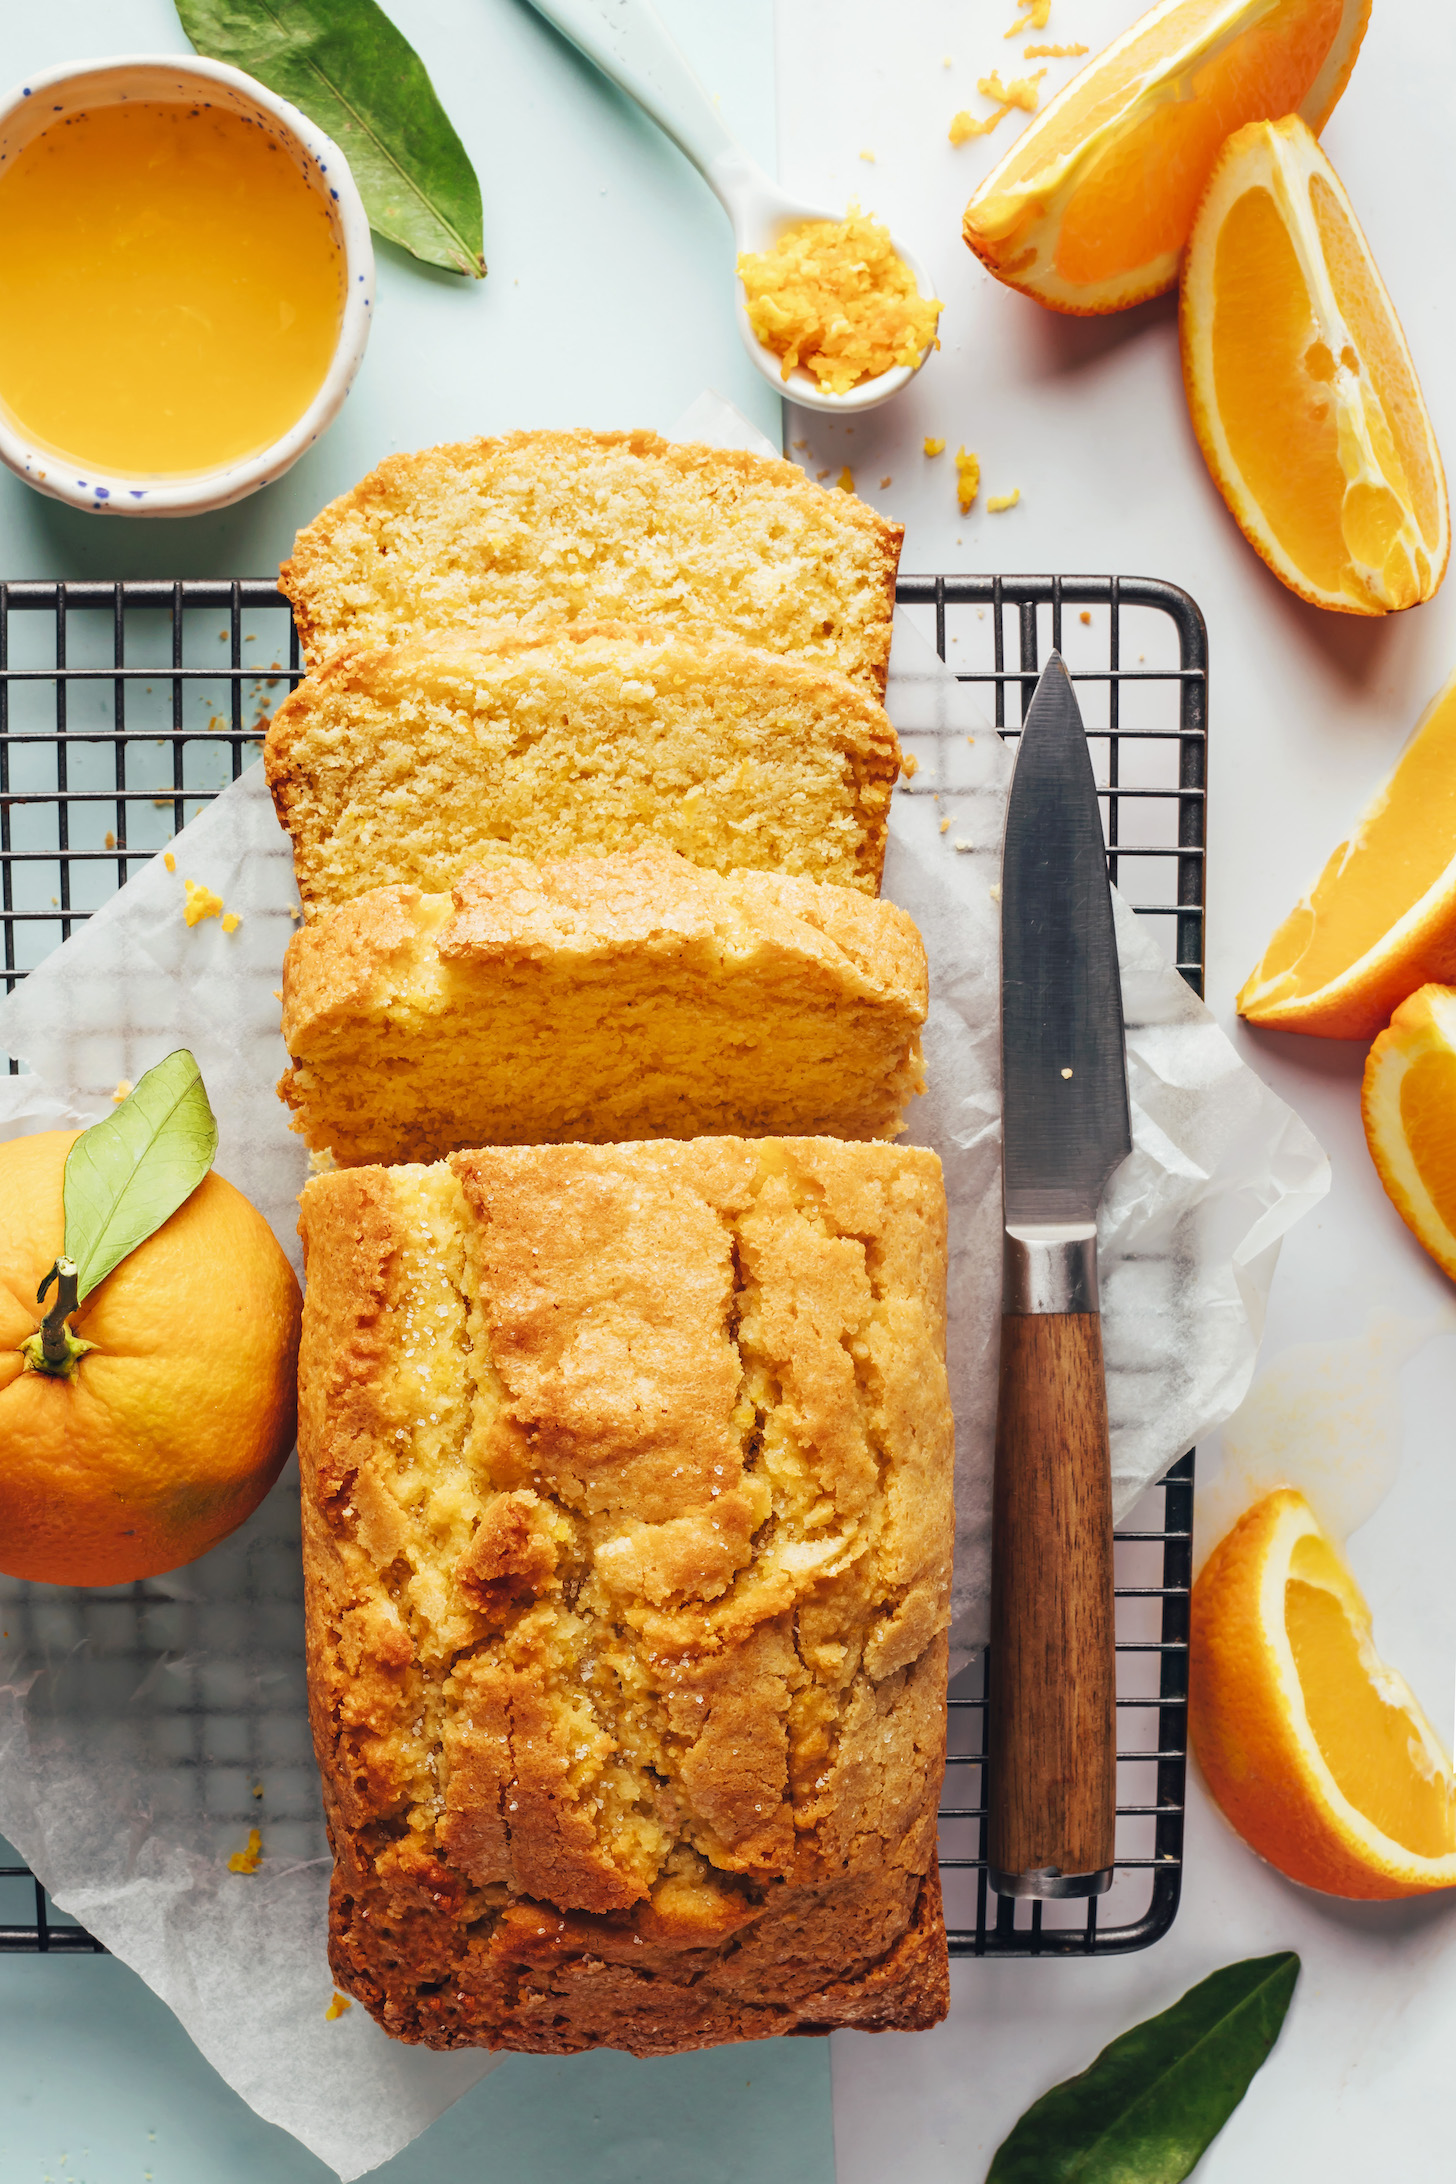 Pan parcialmente rebanado de pastel de naranja y almendras en una rejilla para enfriar